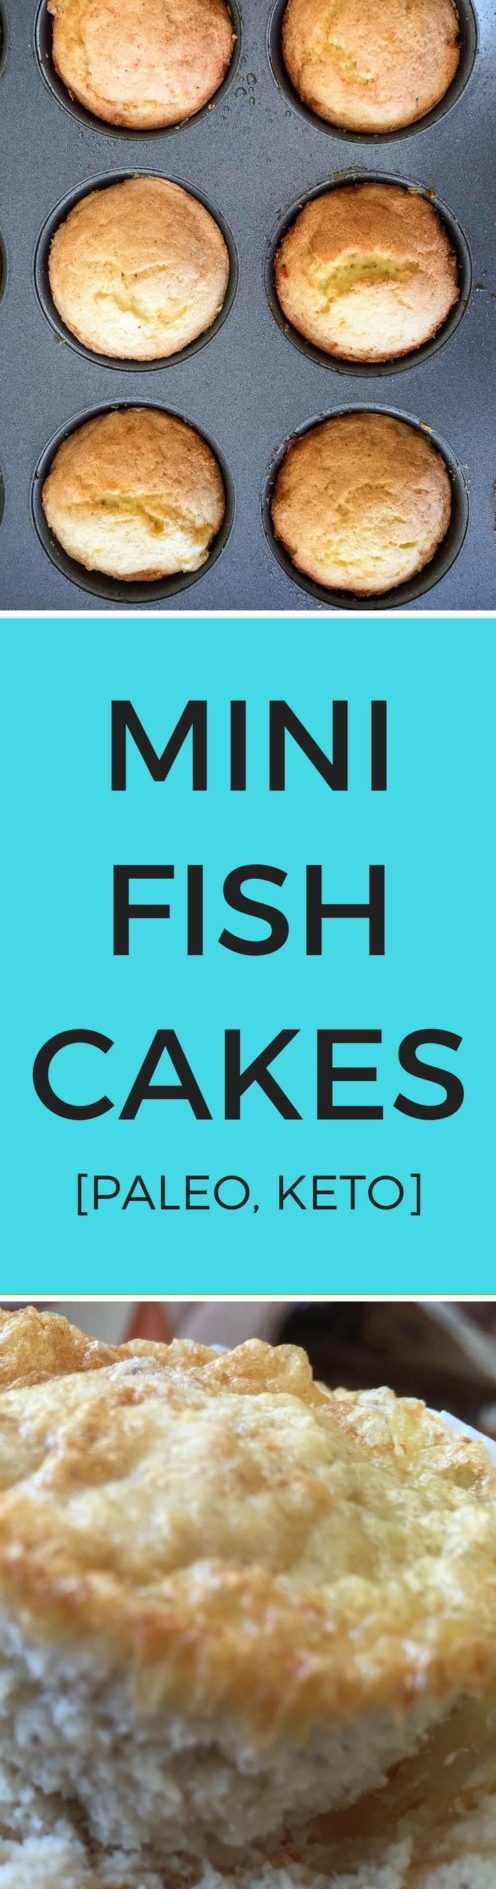 Mini Fish Cakes Recipe [Paleo, Keto] #paleo #keto #recipes - https://paleoflourish.com/mini-fish-cakes-recipe-paleo-keto